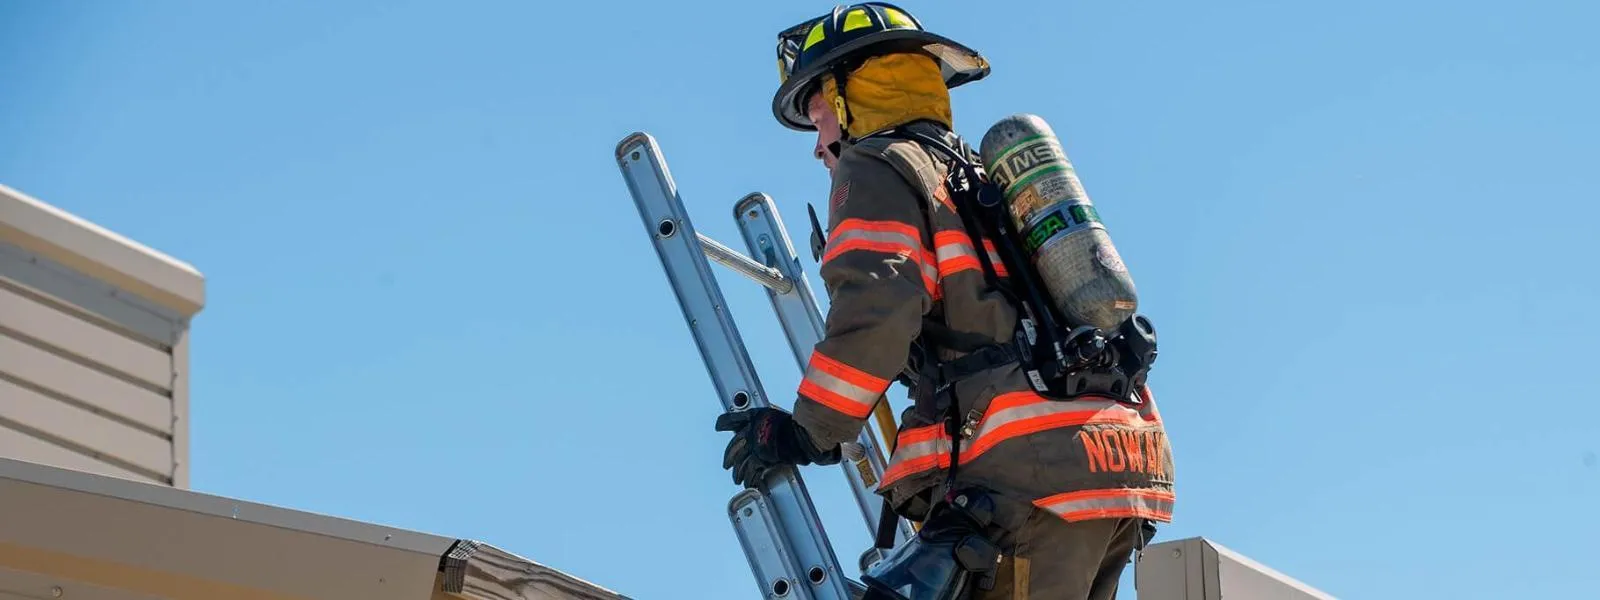 Firefighter on ladder